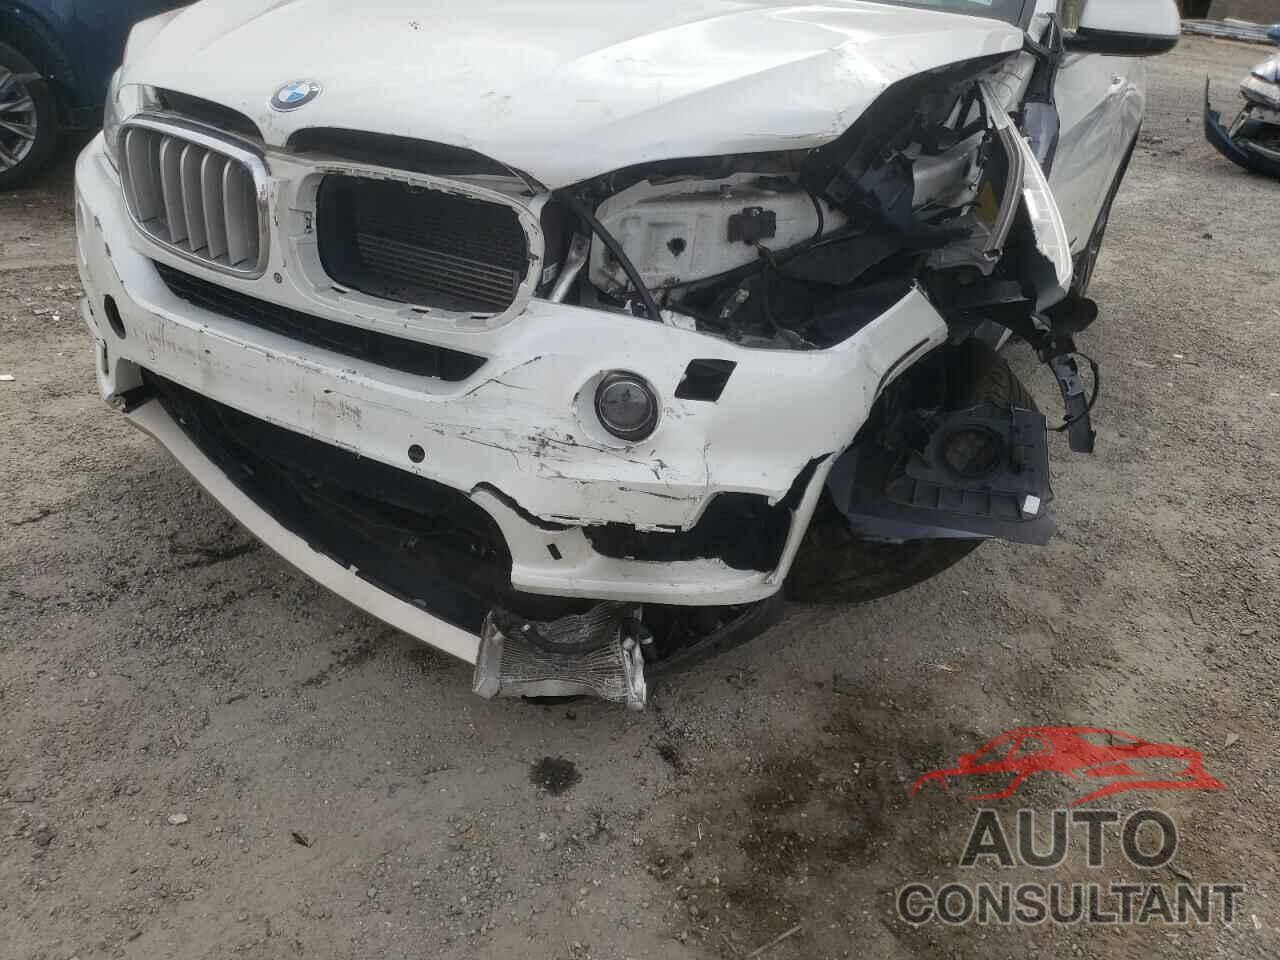 BMW X5 2017 - 5UXKT0C35H0S80837